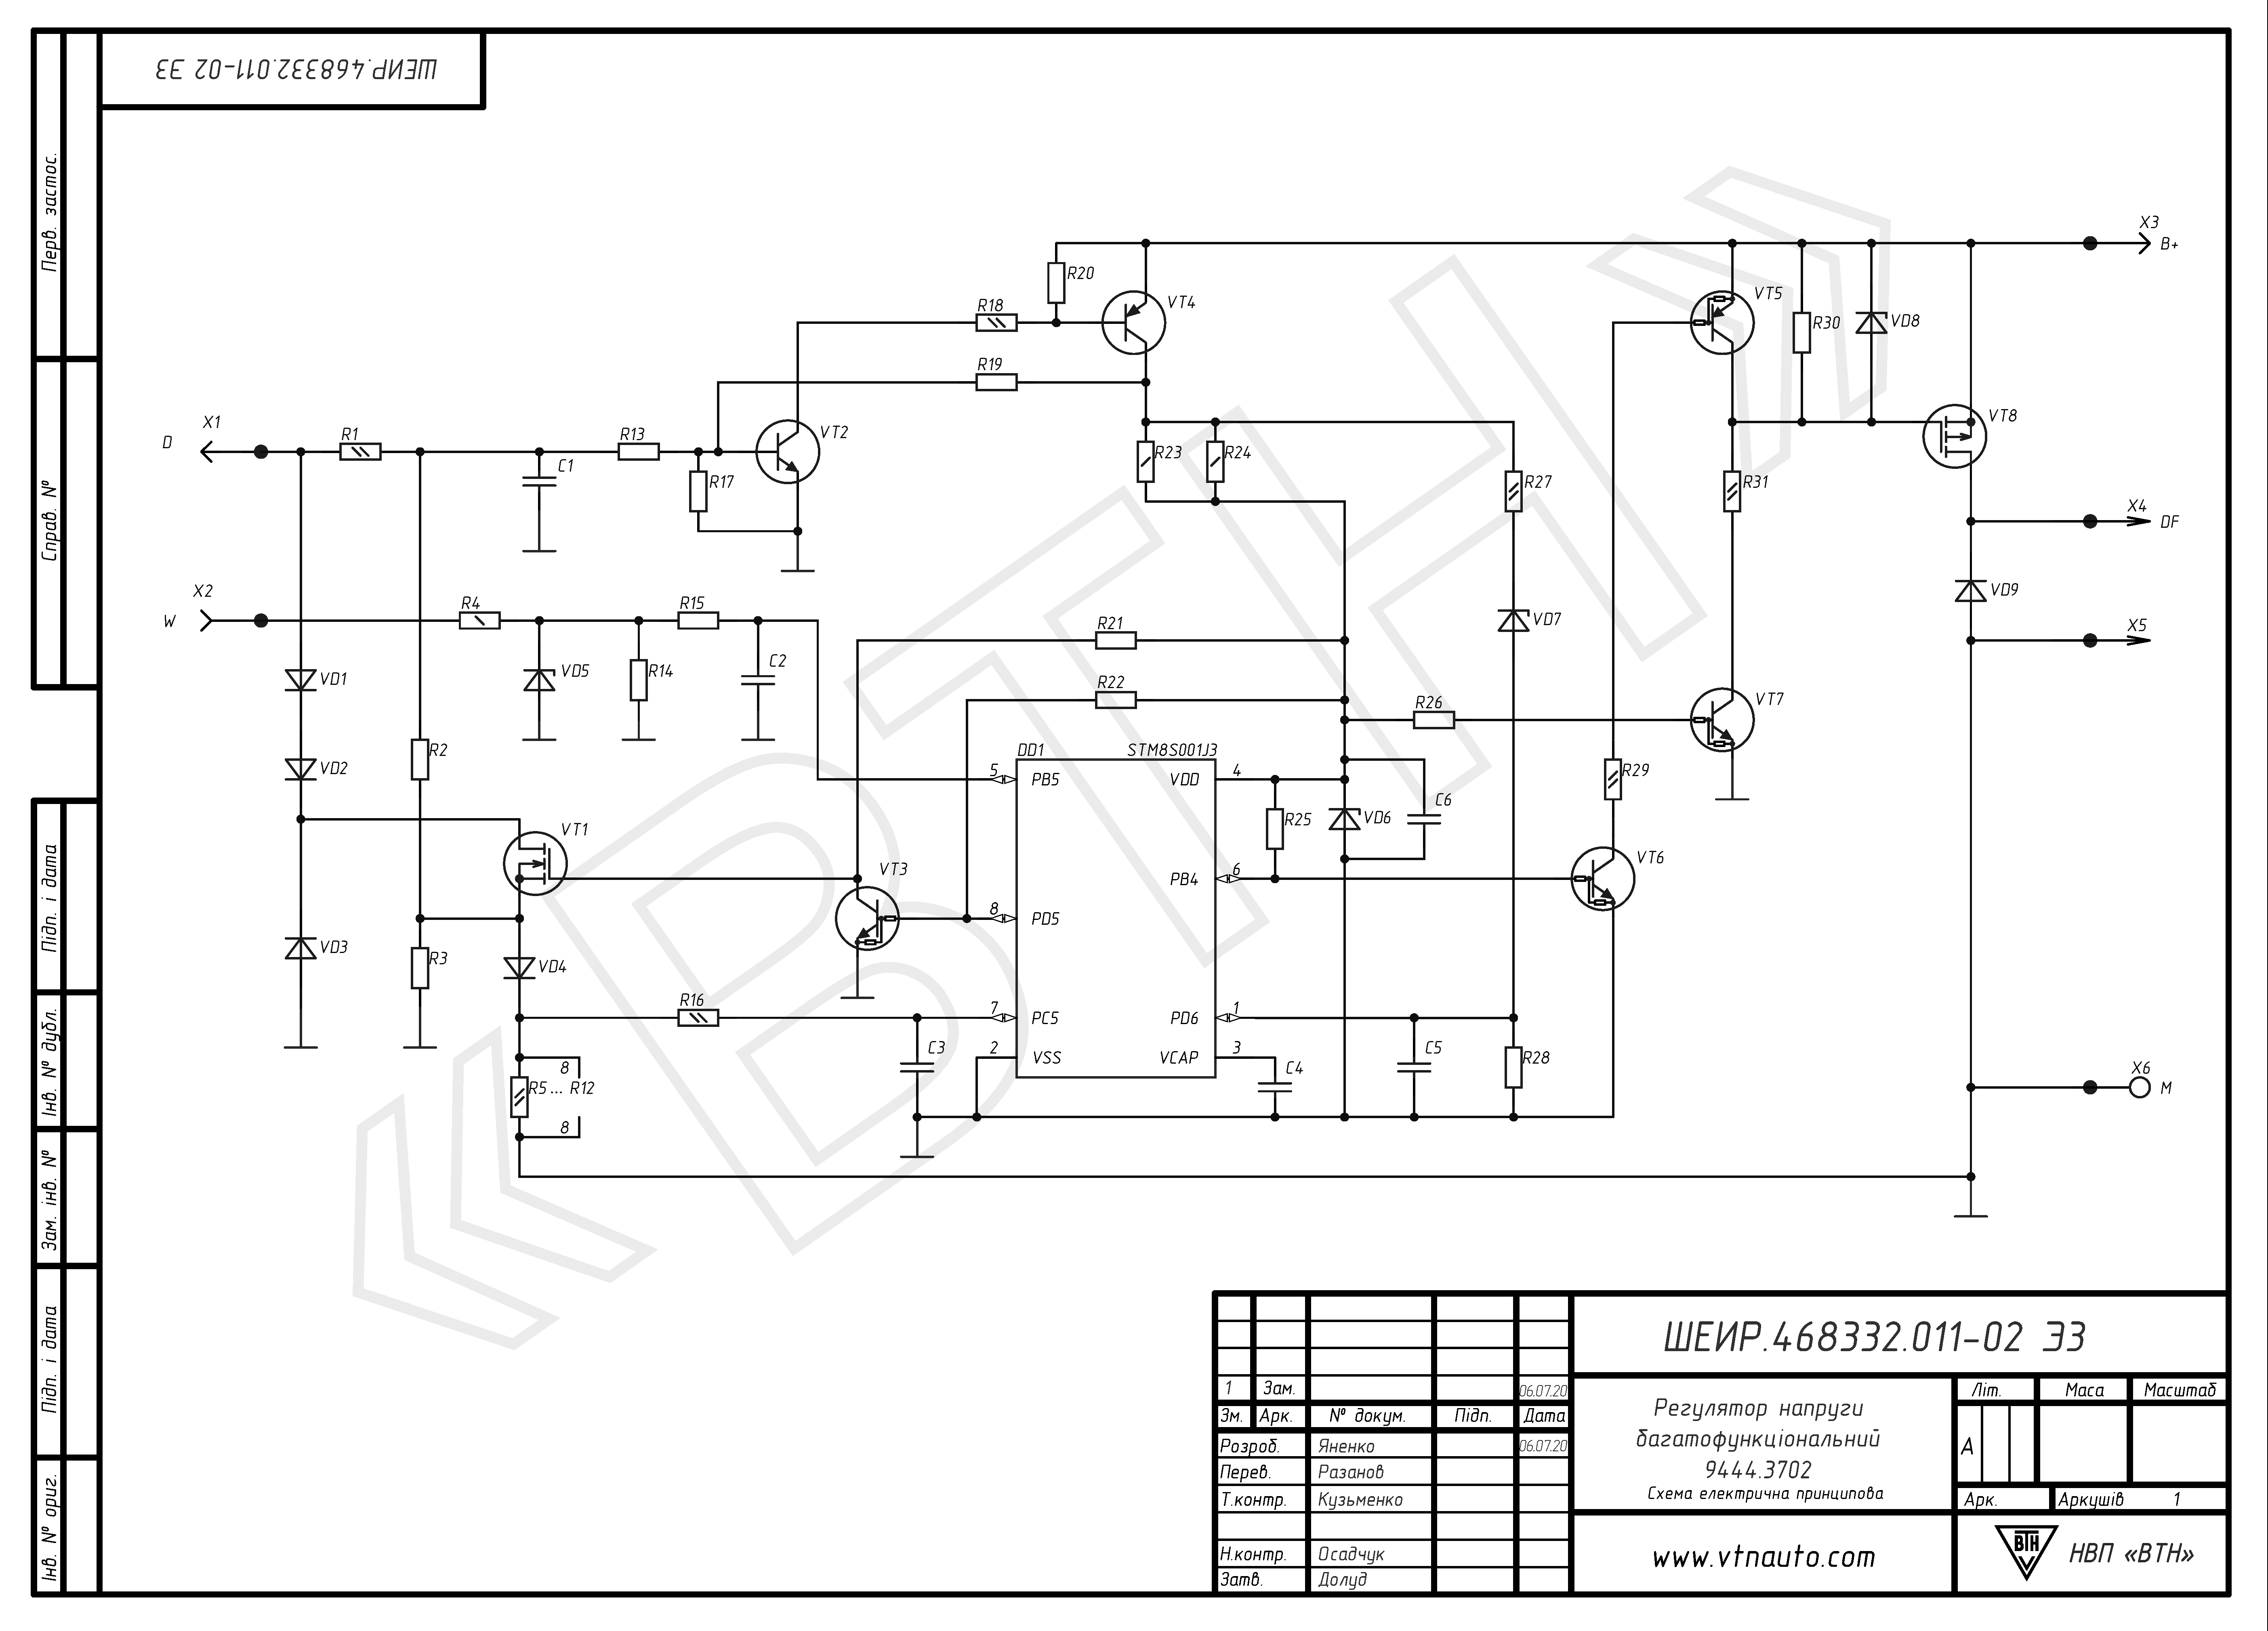 Circuit diagram of voltage regulator 9444.3702